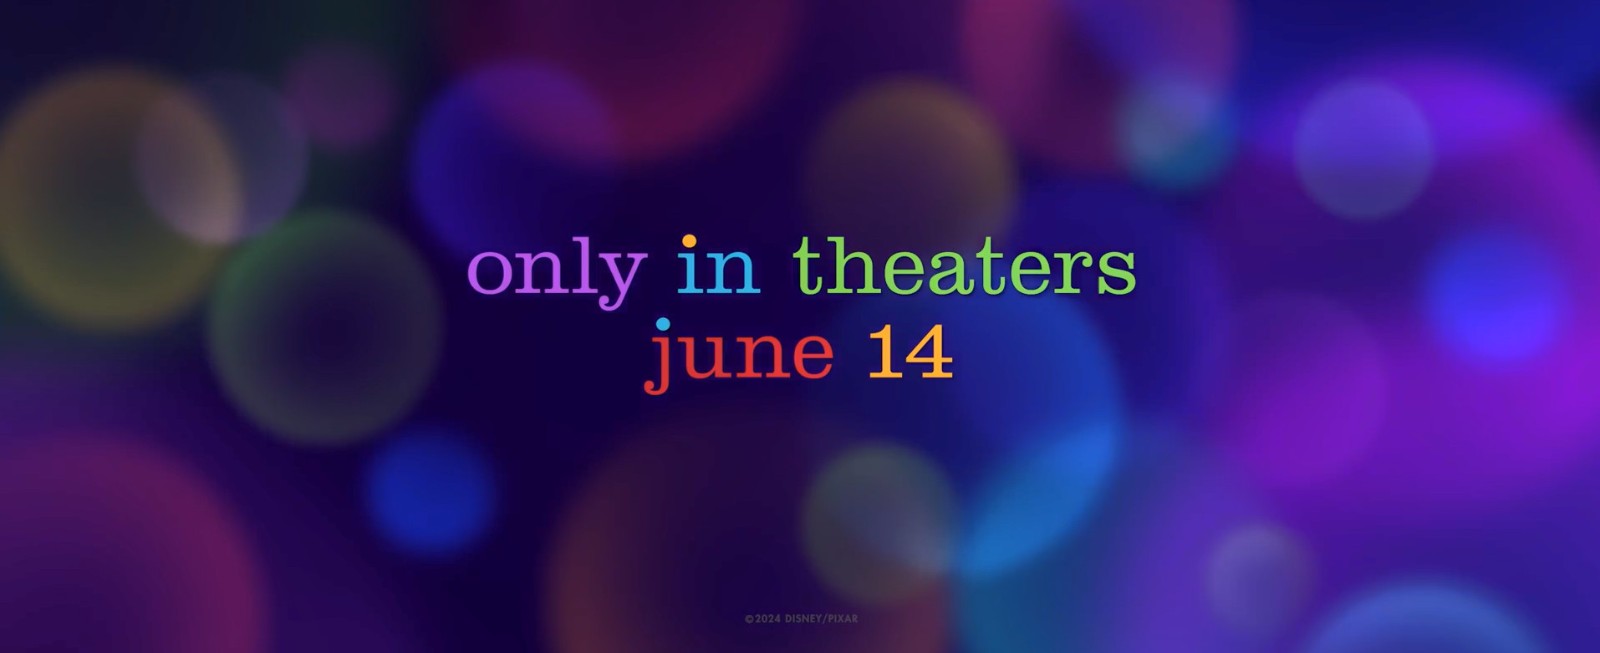 《头脑特工队2》正式预告曝光 6月14日北美上映